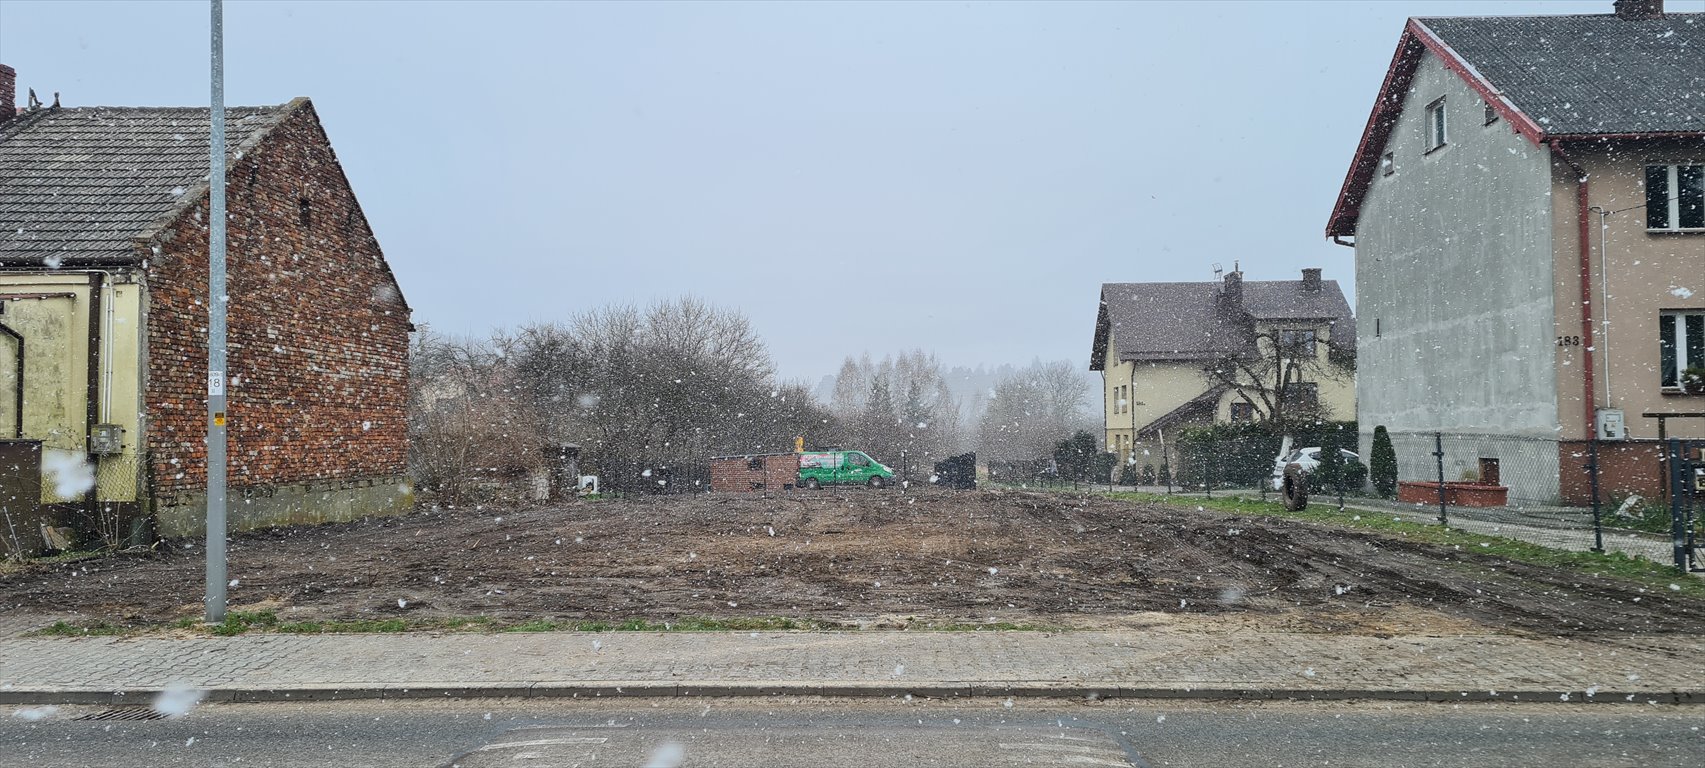 Działka budowlana na sprzedaż Kielce, Czarnów Rządowy, Piekoszowska  658m2 Foto 1